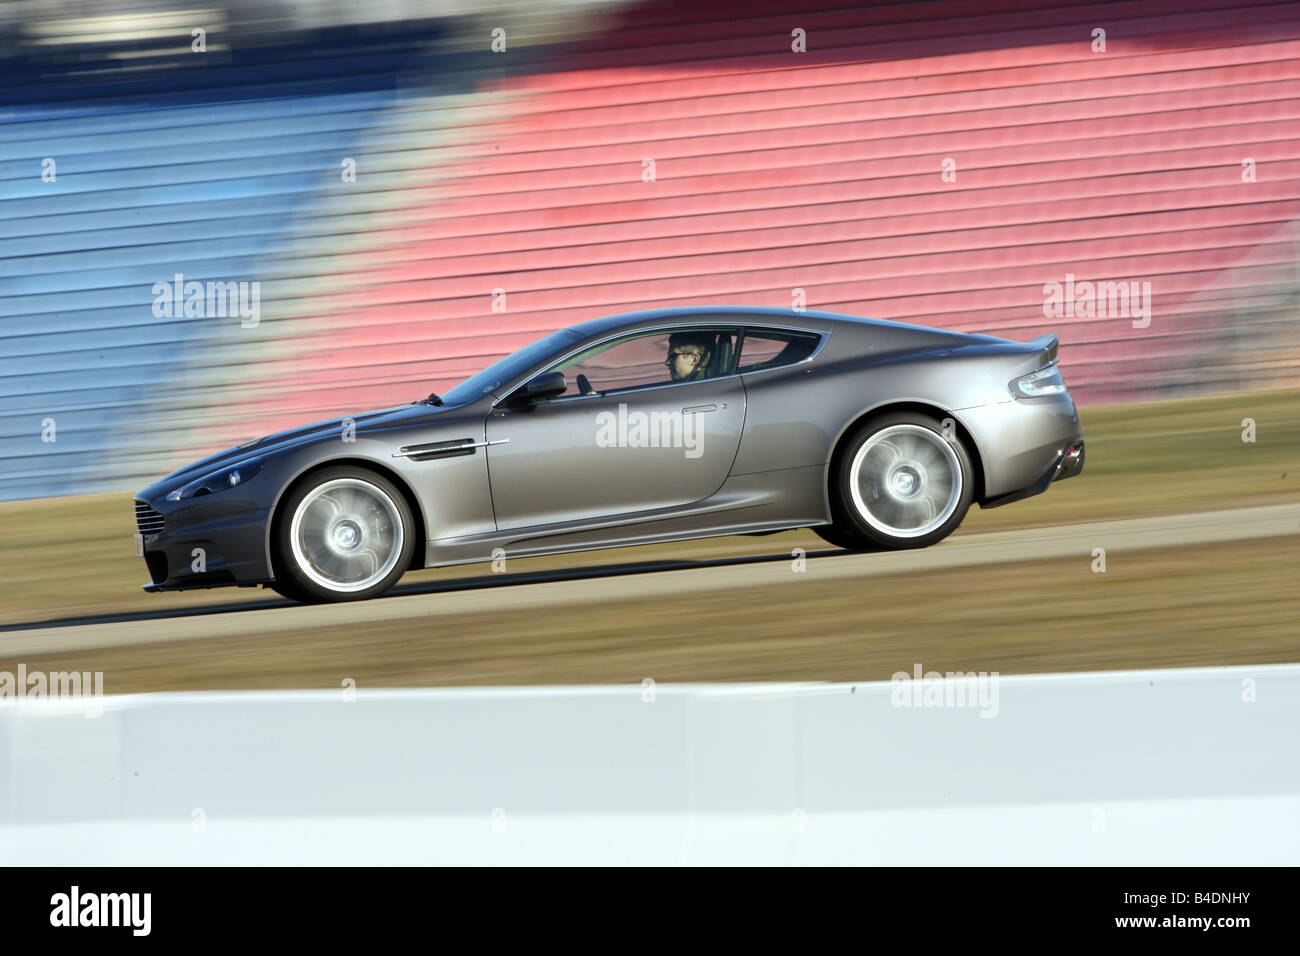 Aston Martin DBS, l'année de modèle 2008-, l'anthracite, la conduite, la vue latérale, test track Banque D'Images